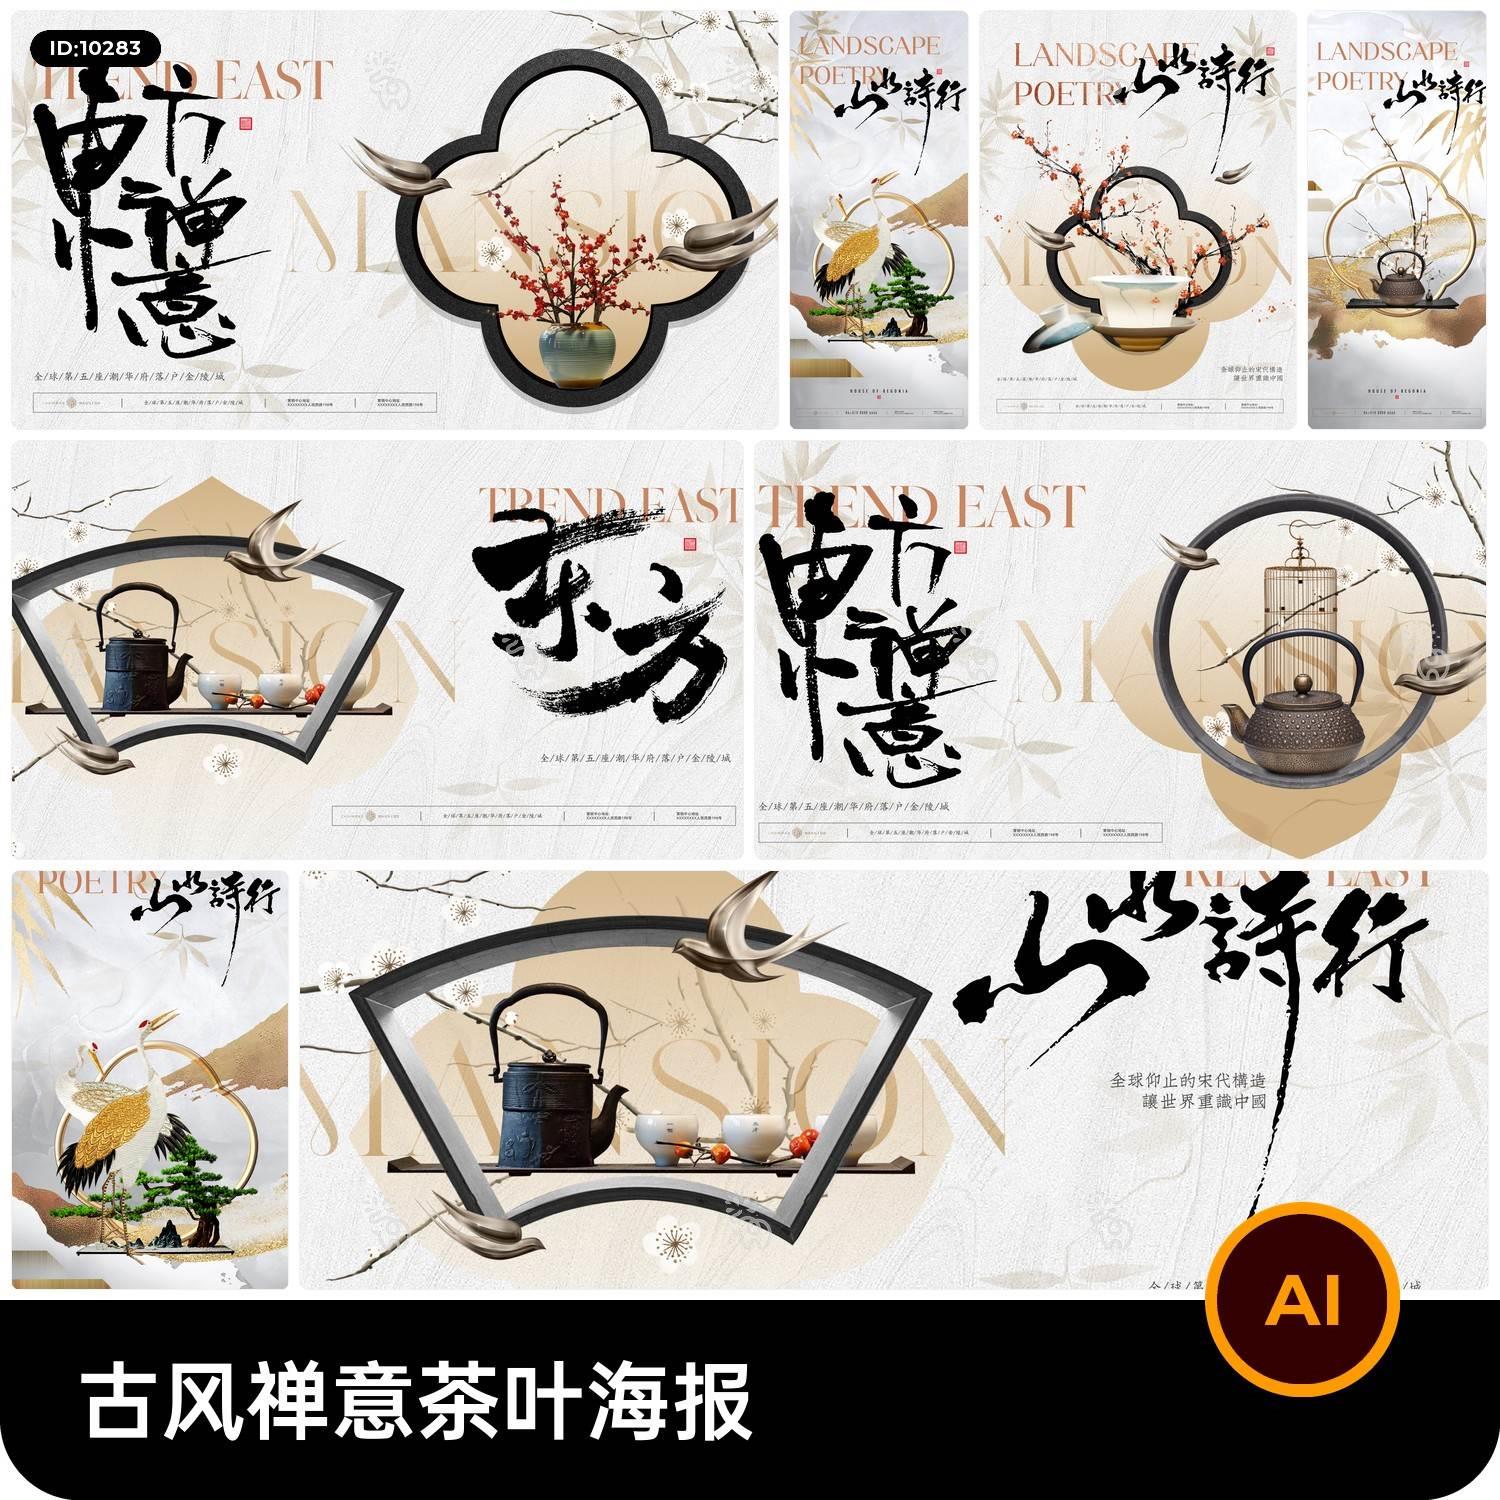 中国风中式禅意东方茶叶茶饮活动宣传海报物料模板AI矢量设计素材